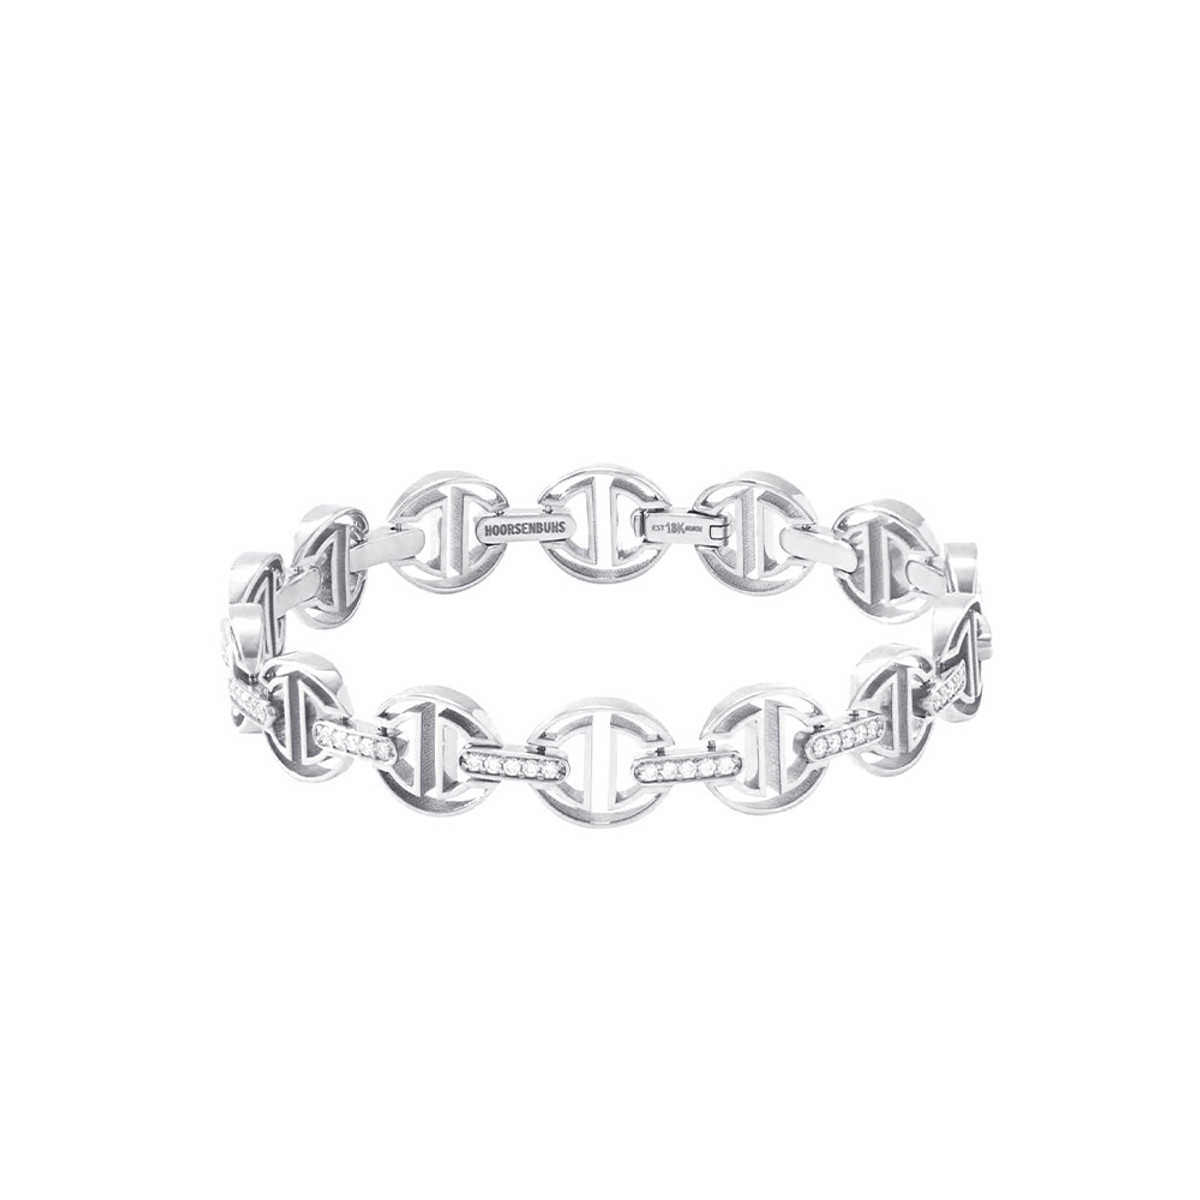 Hoorsenbuhs 18K White Gold MMV Diamond Bridges Small Link Bracelet-57468 Product Image